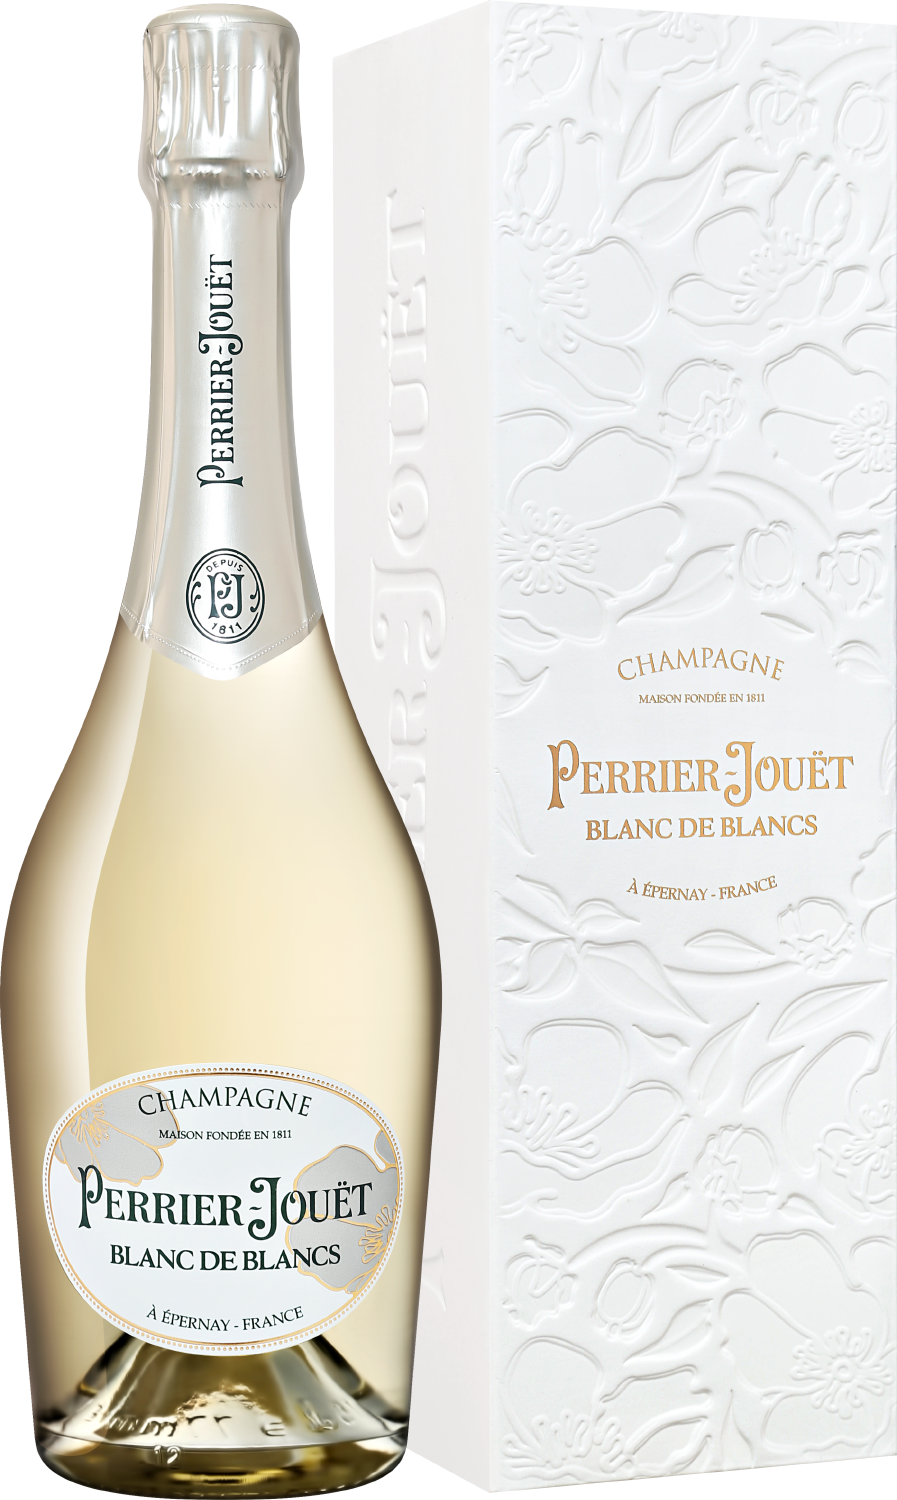 Perrier-Jouet Blanc De Blancs Champagne AOC Brut antech blanquette de limoux aoc tradition brut